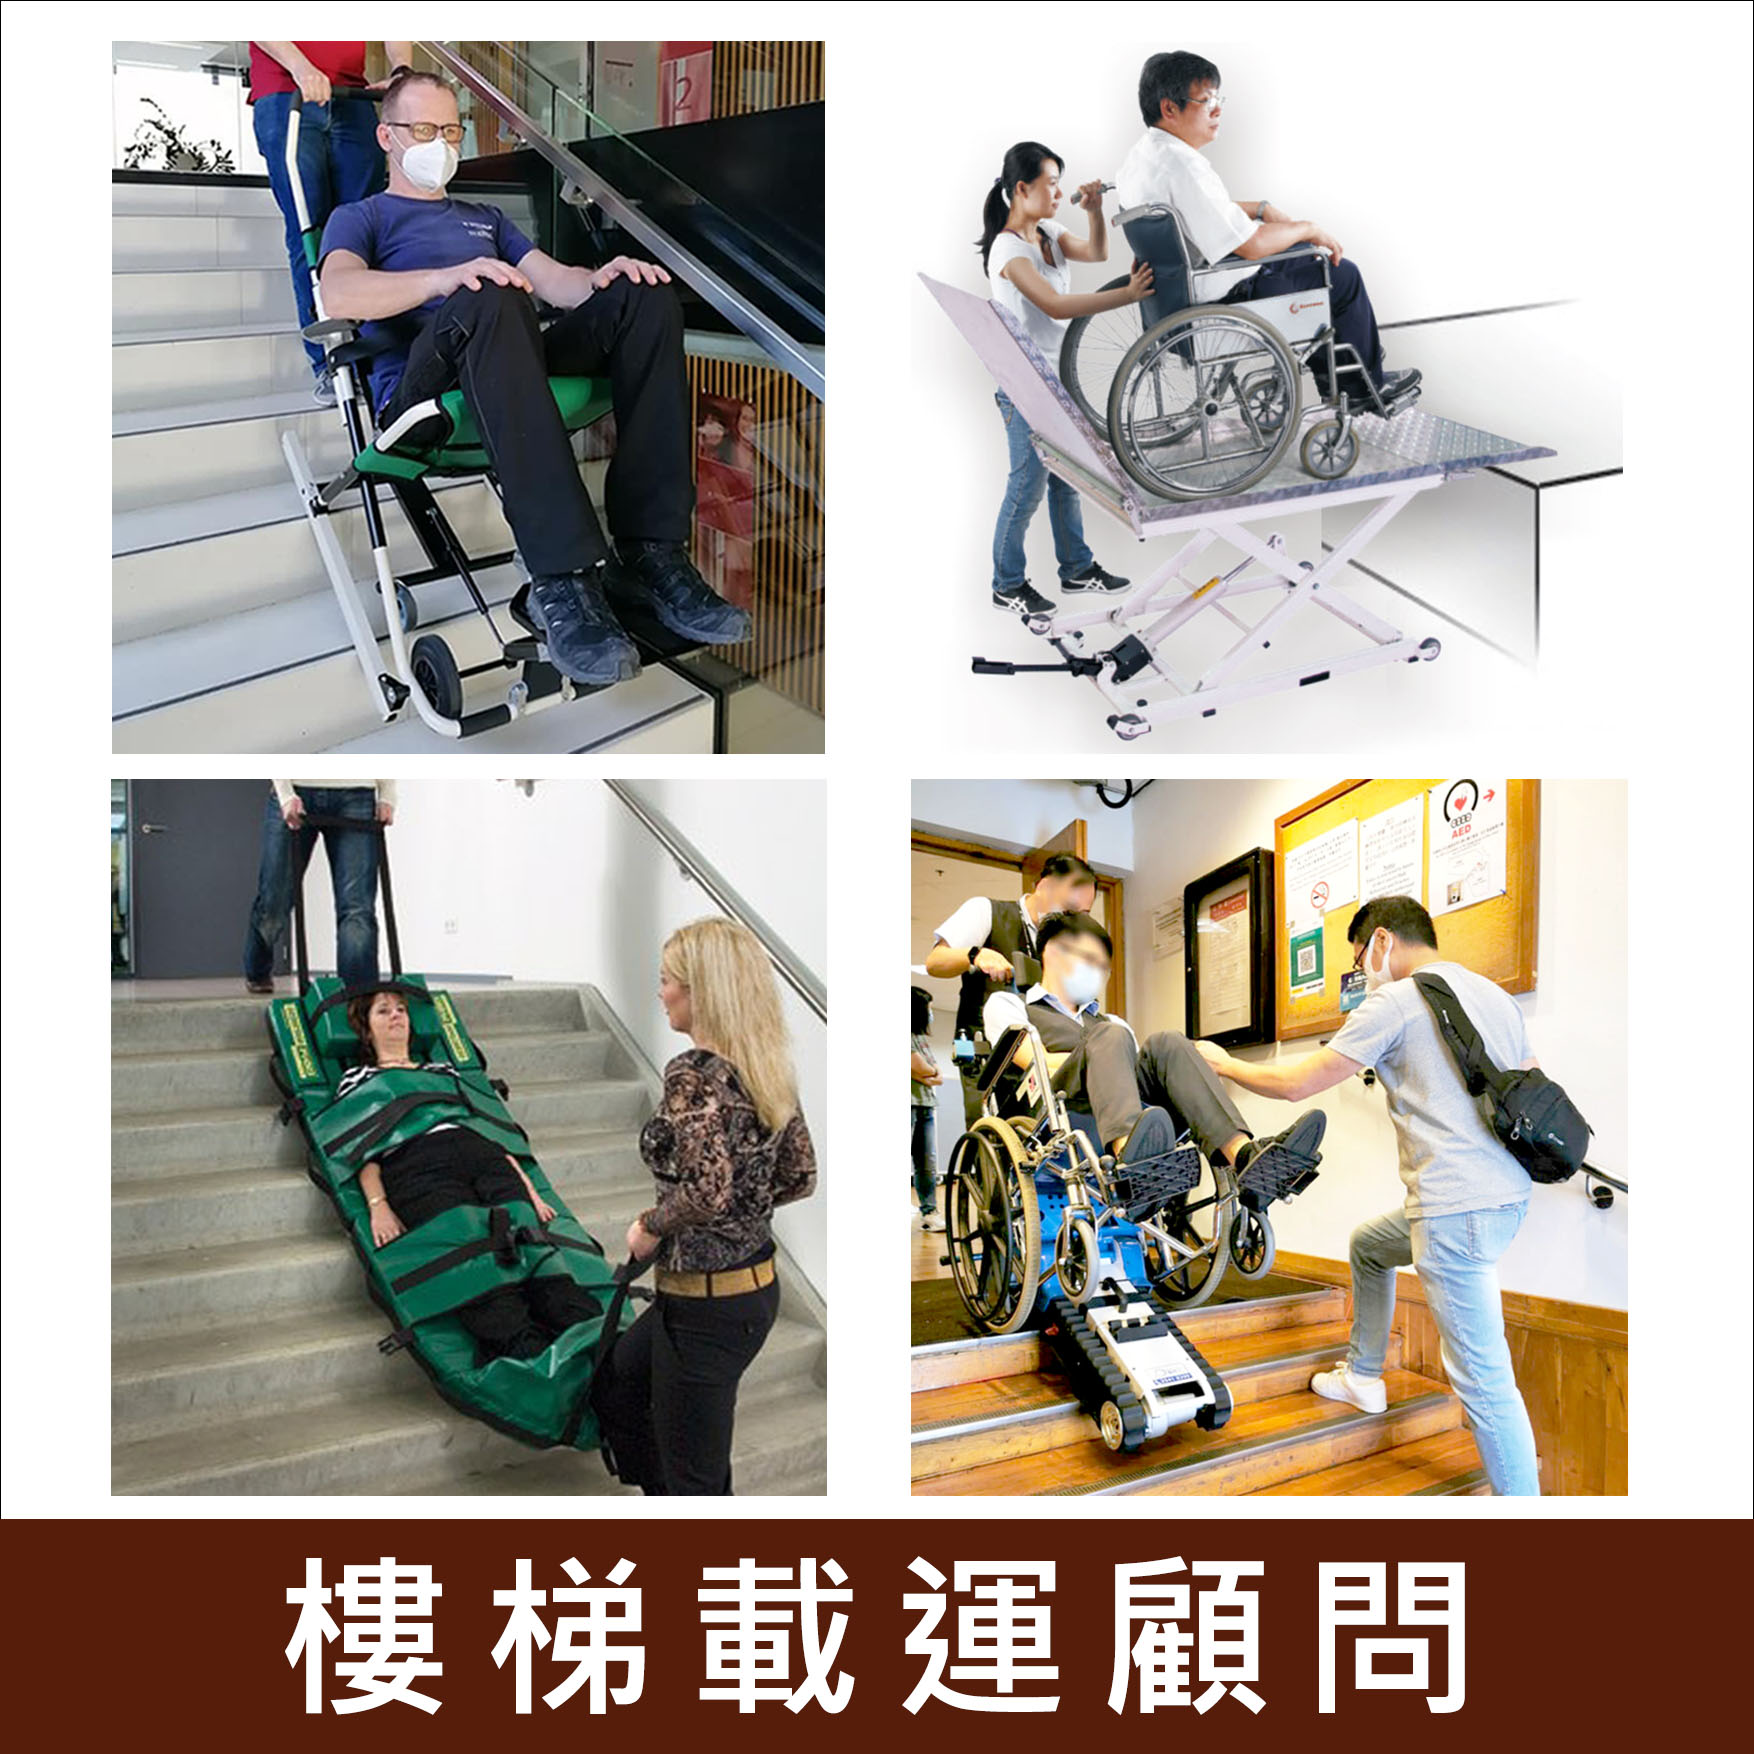 輪椅王 四張圖展示了不同的方式讓輪椅使用者上下樓梯：第一張圖，一名男子坐在輪椅上，透過電動輪椅上樓；第二張圖分別顯示升降著輪椅的使用者；第三張圖，女子被固定在手持椅子搬運下樓；第四張圖為一名男子操作爬樓機搬運輪椅。